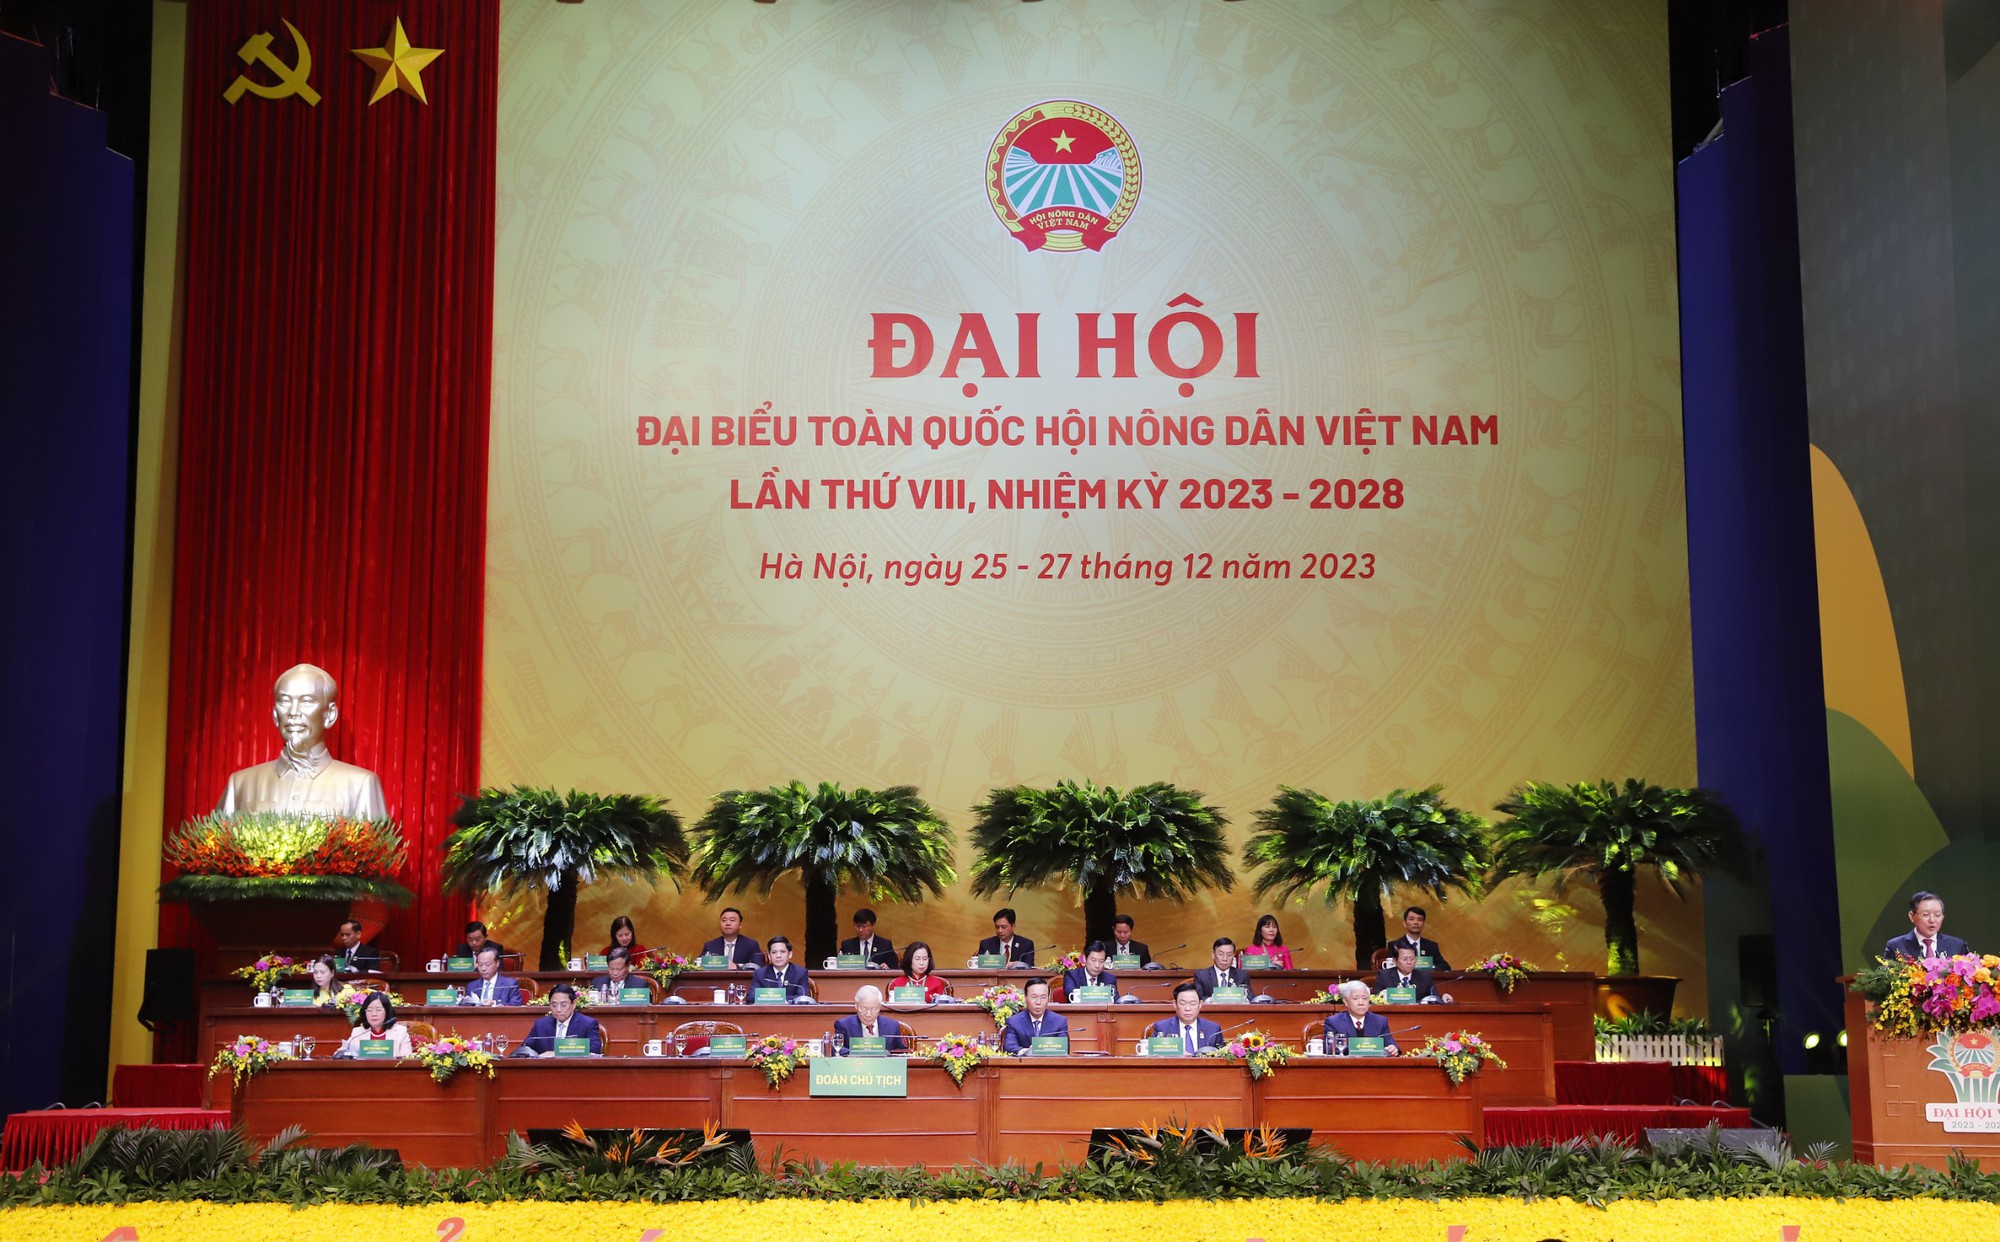 Bài phát biểu khai mạc của Chủ tịch Hội Nông dân Việt Nam Lương Quốc Đoàn tại Đại hội VIII, nhiệm kỳ 2023 – 2028 - Ảnh 2.